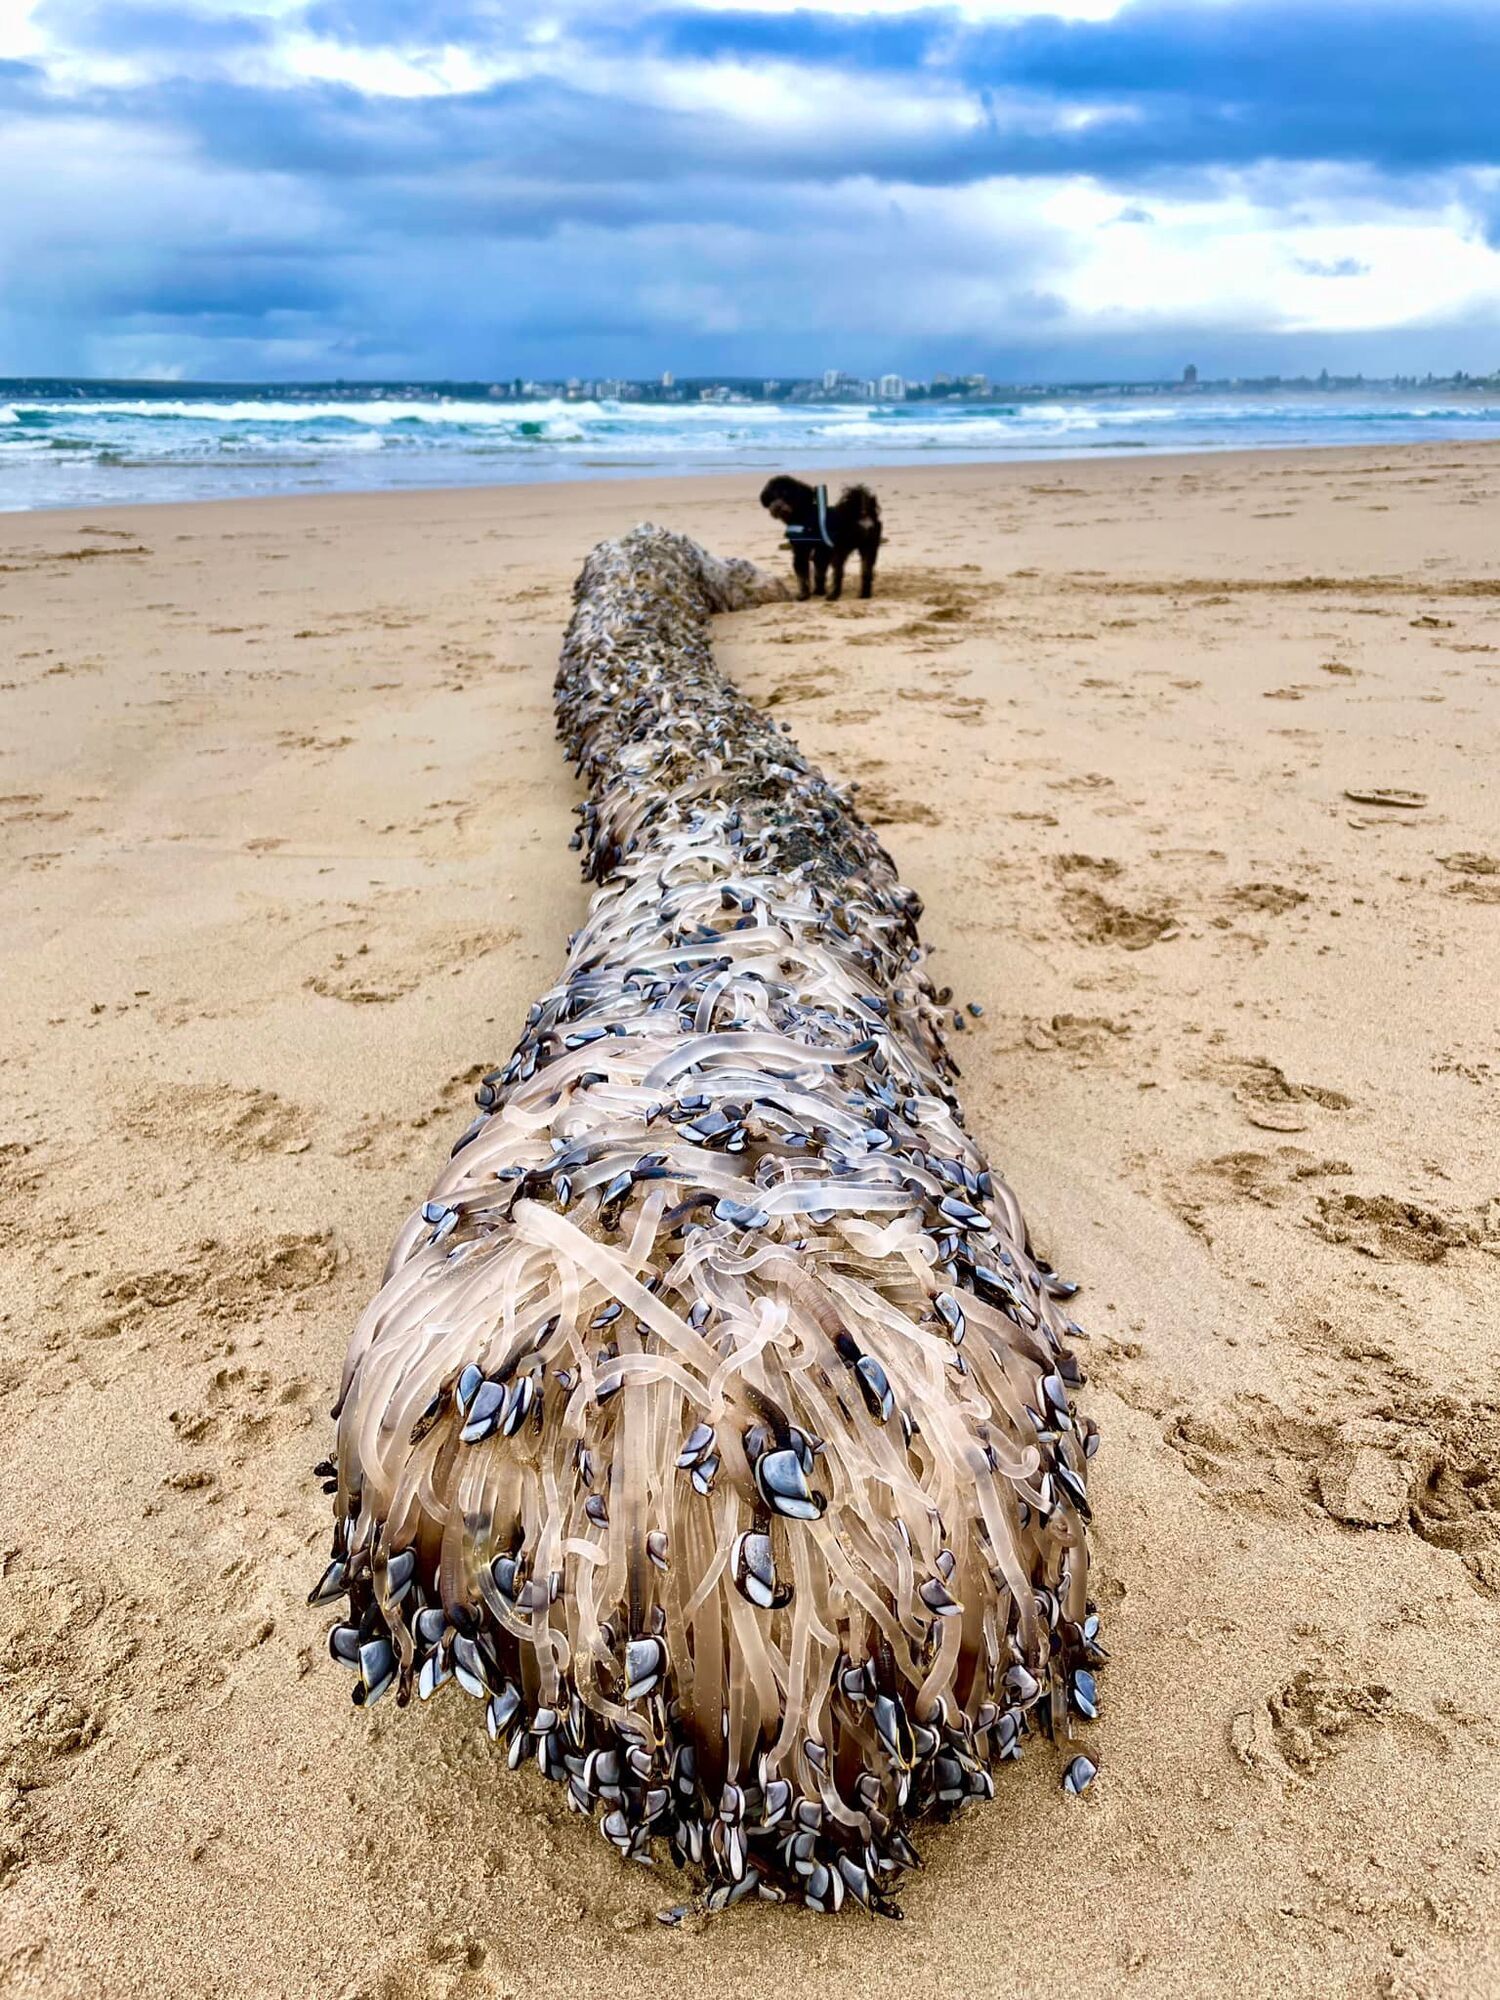 Будто фильм ужасов: на пляж в Австралии выбросило странные существа, исполнявших "смертельный танец". Фото, видео